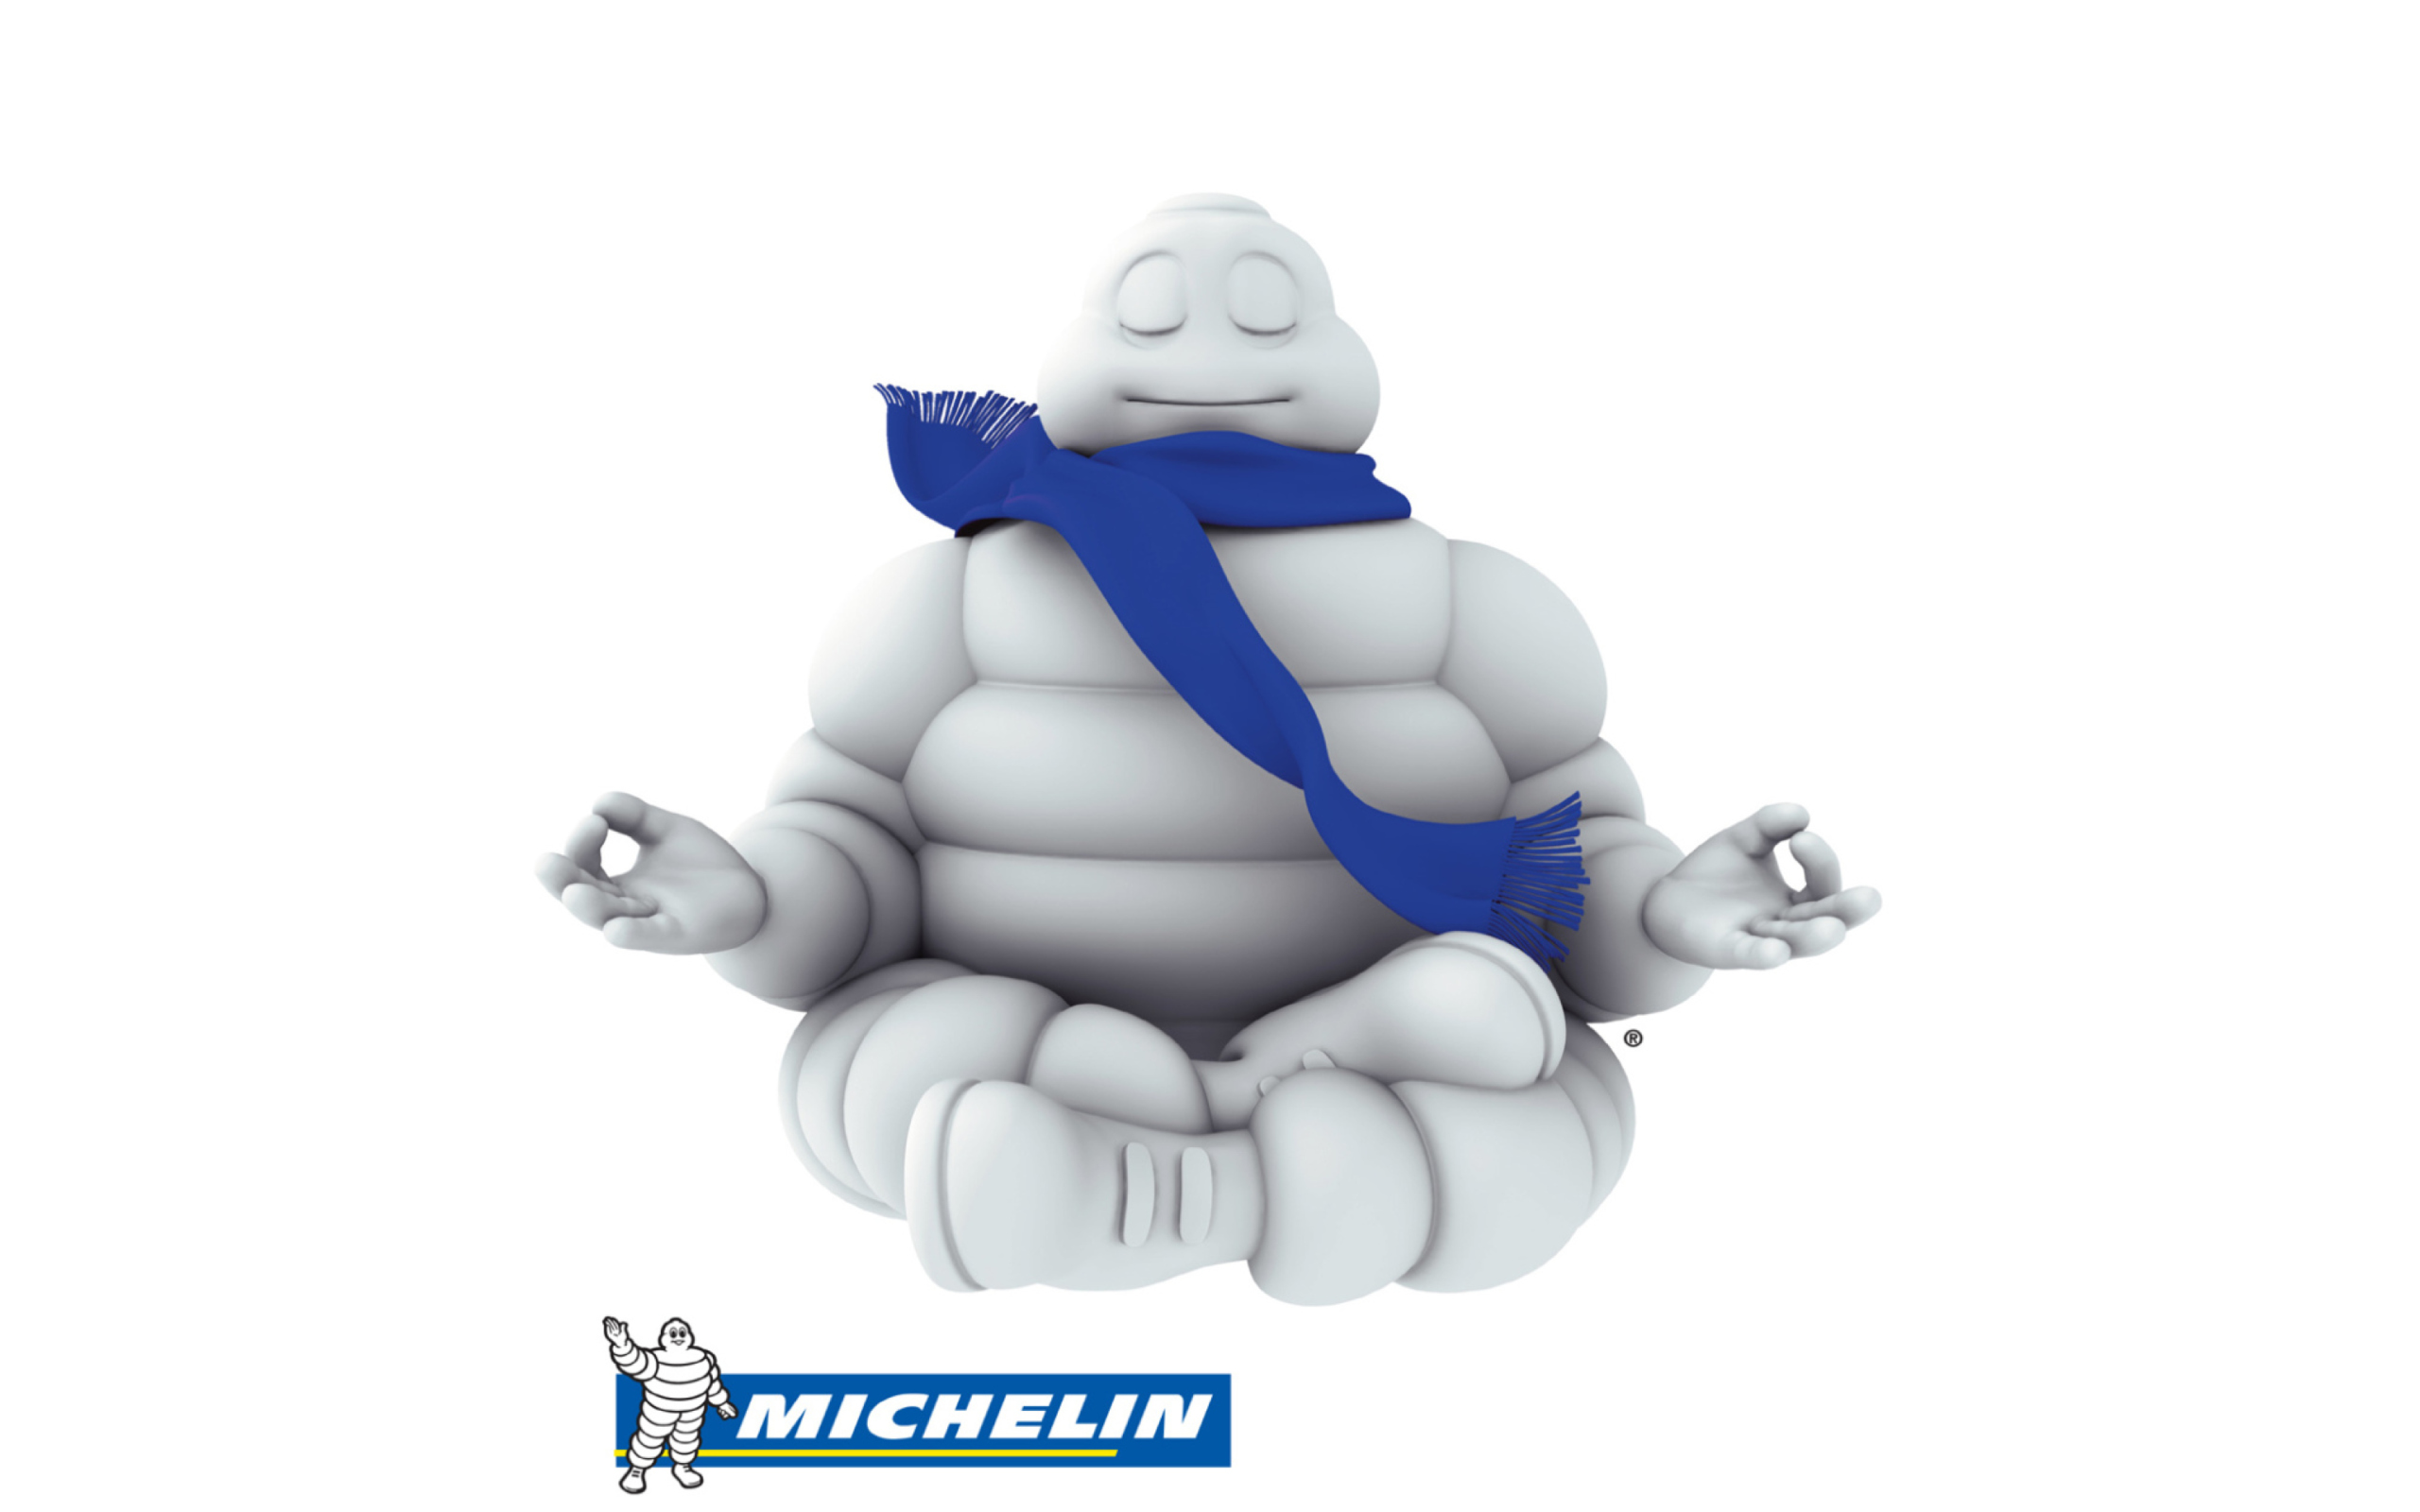 Обои Michelin 2560x1600